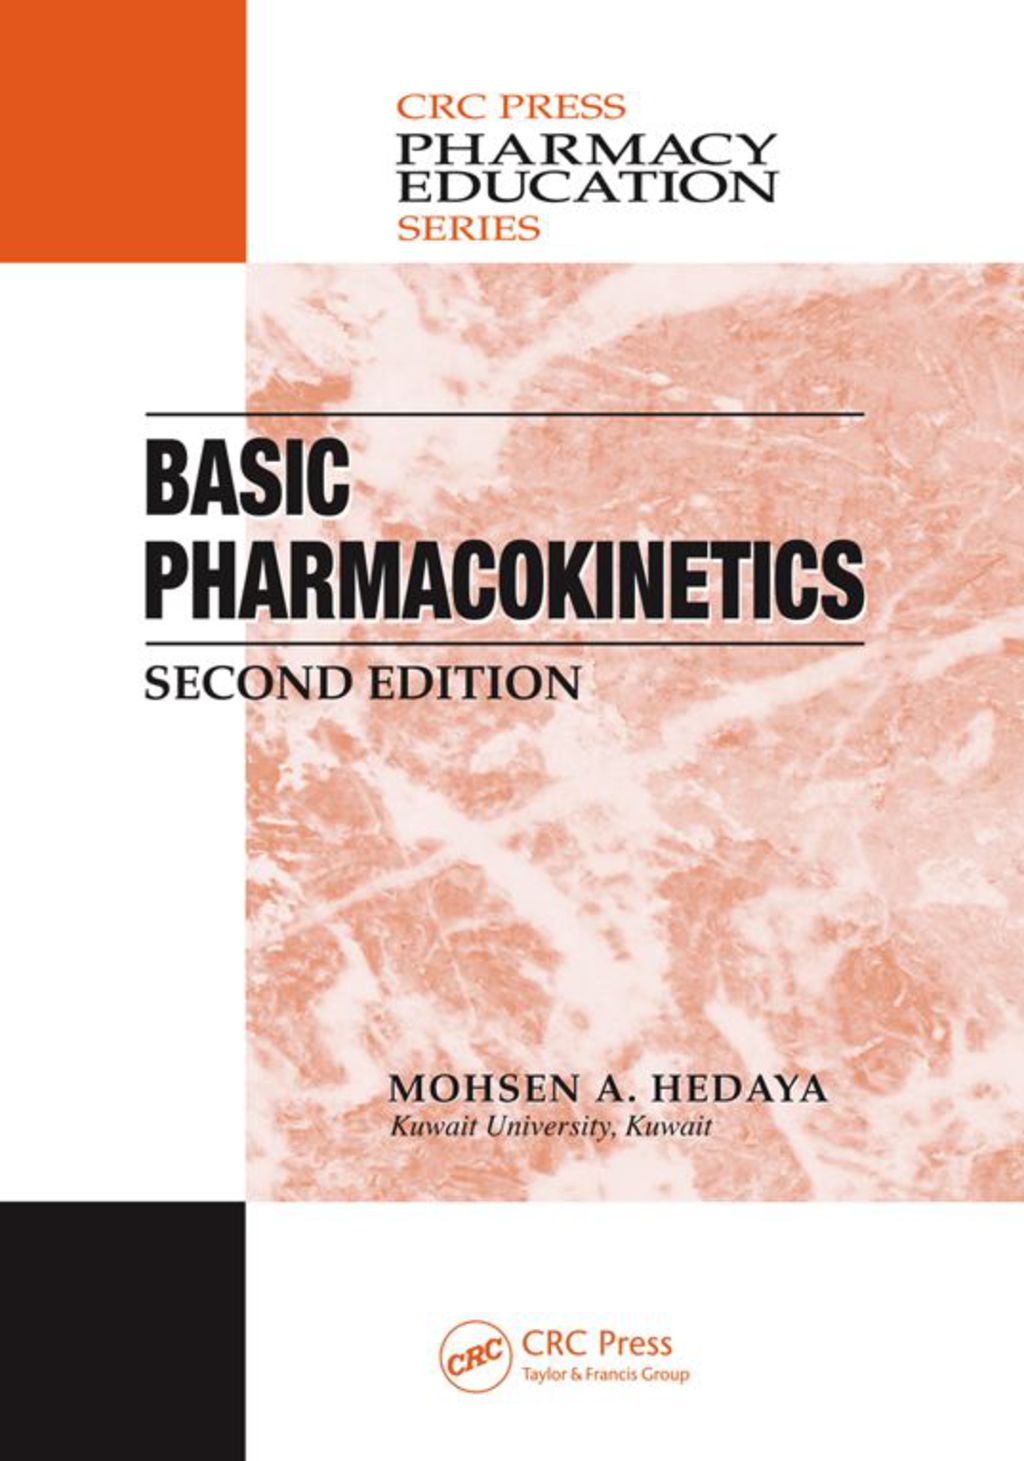 Basic Pharmacokinetics (eBook) - Mohsen A. Hedaya